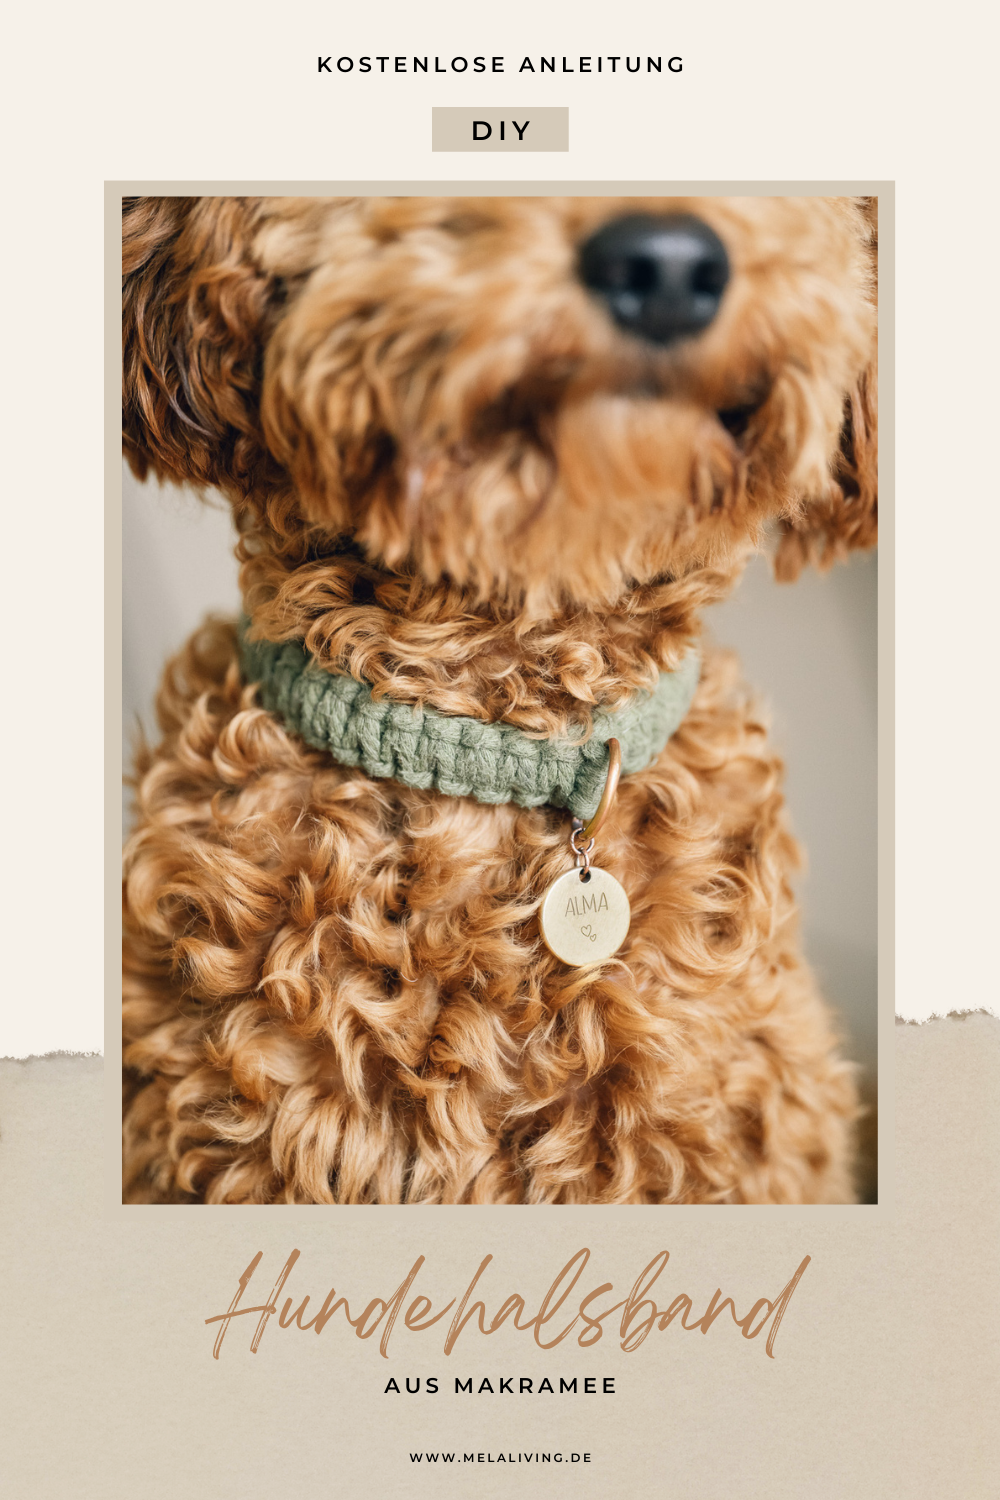 Du möchtest wissen, wie du ein DIY Hundehalsband aus Makramee für deinen Hund einfach selber machen kannst? Ich zeige dir in diesem Blog Post, wie das geht! Hier geht’s zur kostenlosen Anleitung #hundehalsband #hund #makramee #diy @melaliving